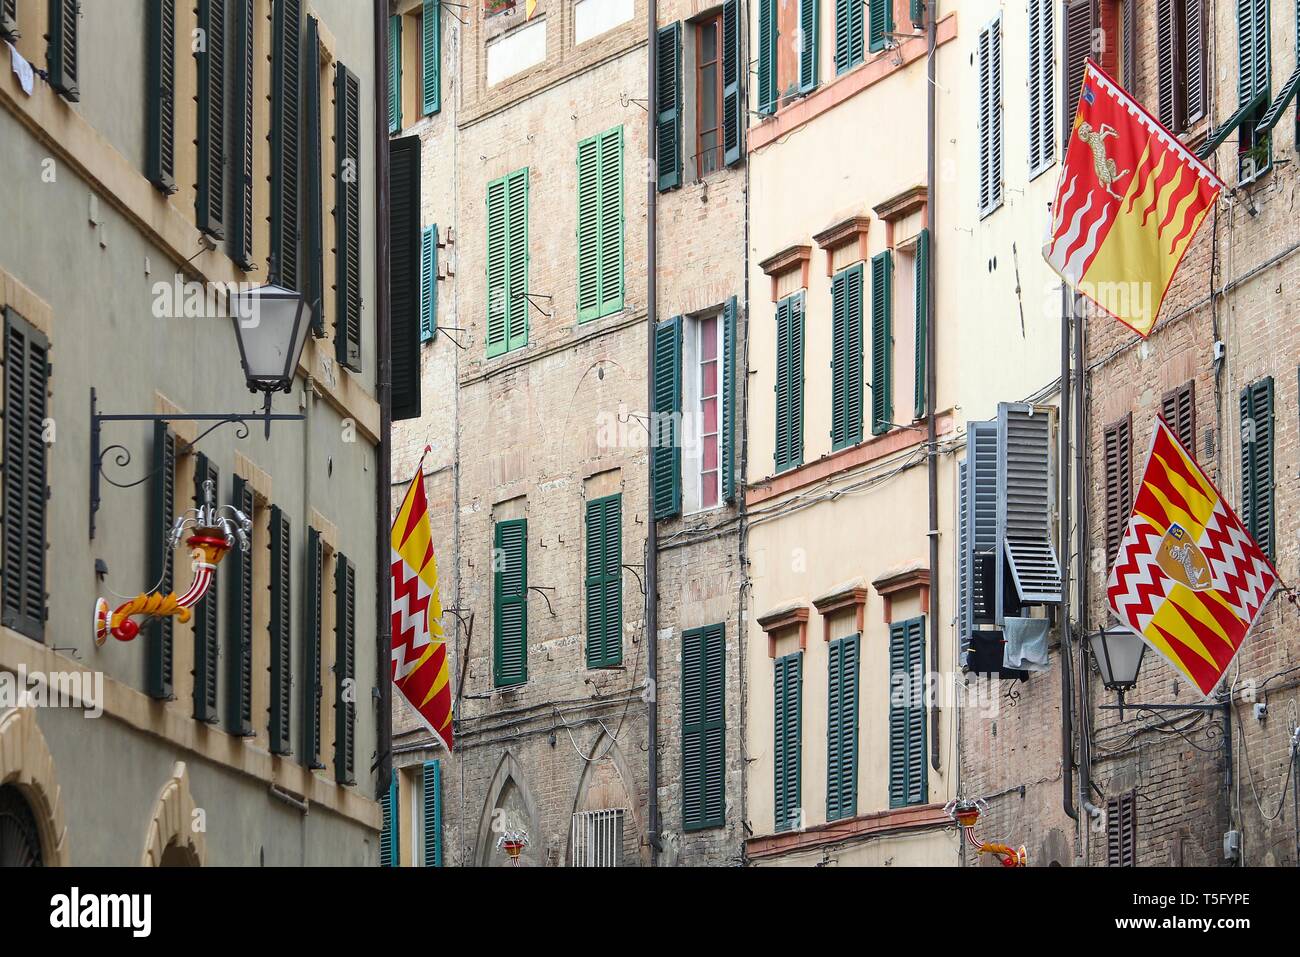 Sienne, Italie. La vieille ville est divisée en quartiers (contrade) traditionnel avec des drapeaux et couleurs. Valdimontone (vallée de la Ram). Banque D'Images